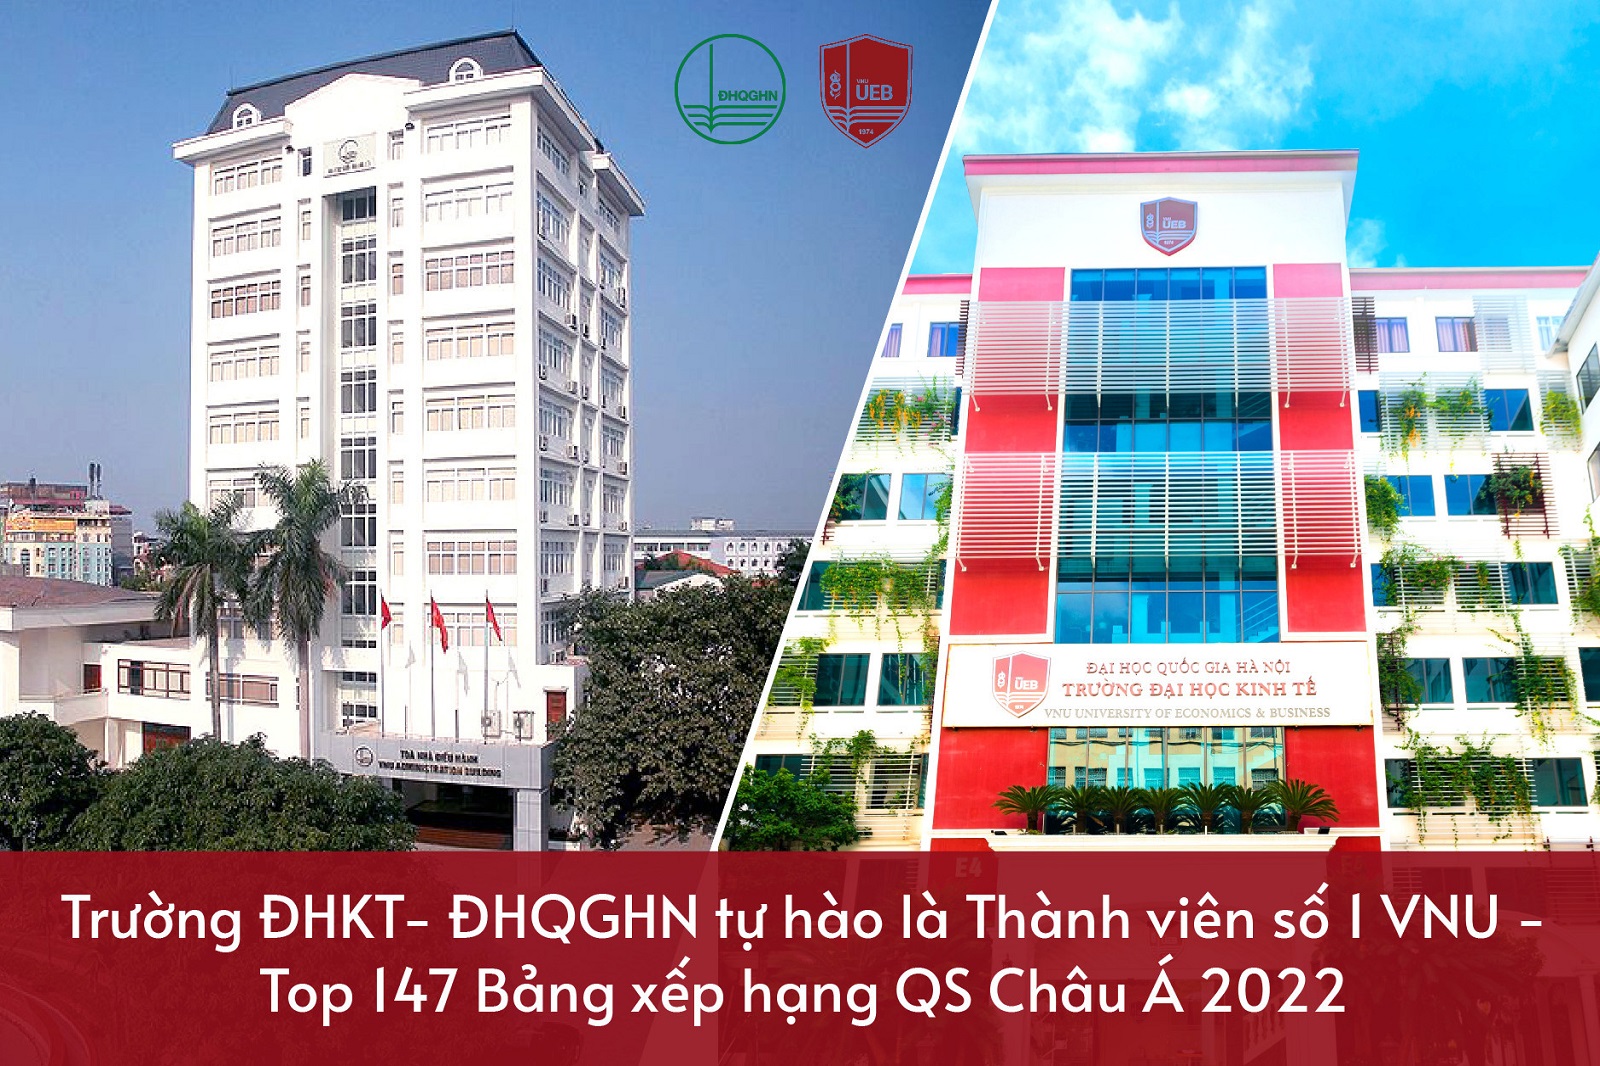  Xếp hạng QS Châu Á 2022: Đại học Quốc gia Hà Nội ở vị trí 147, tăng 13 bậc